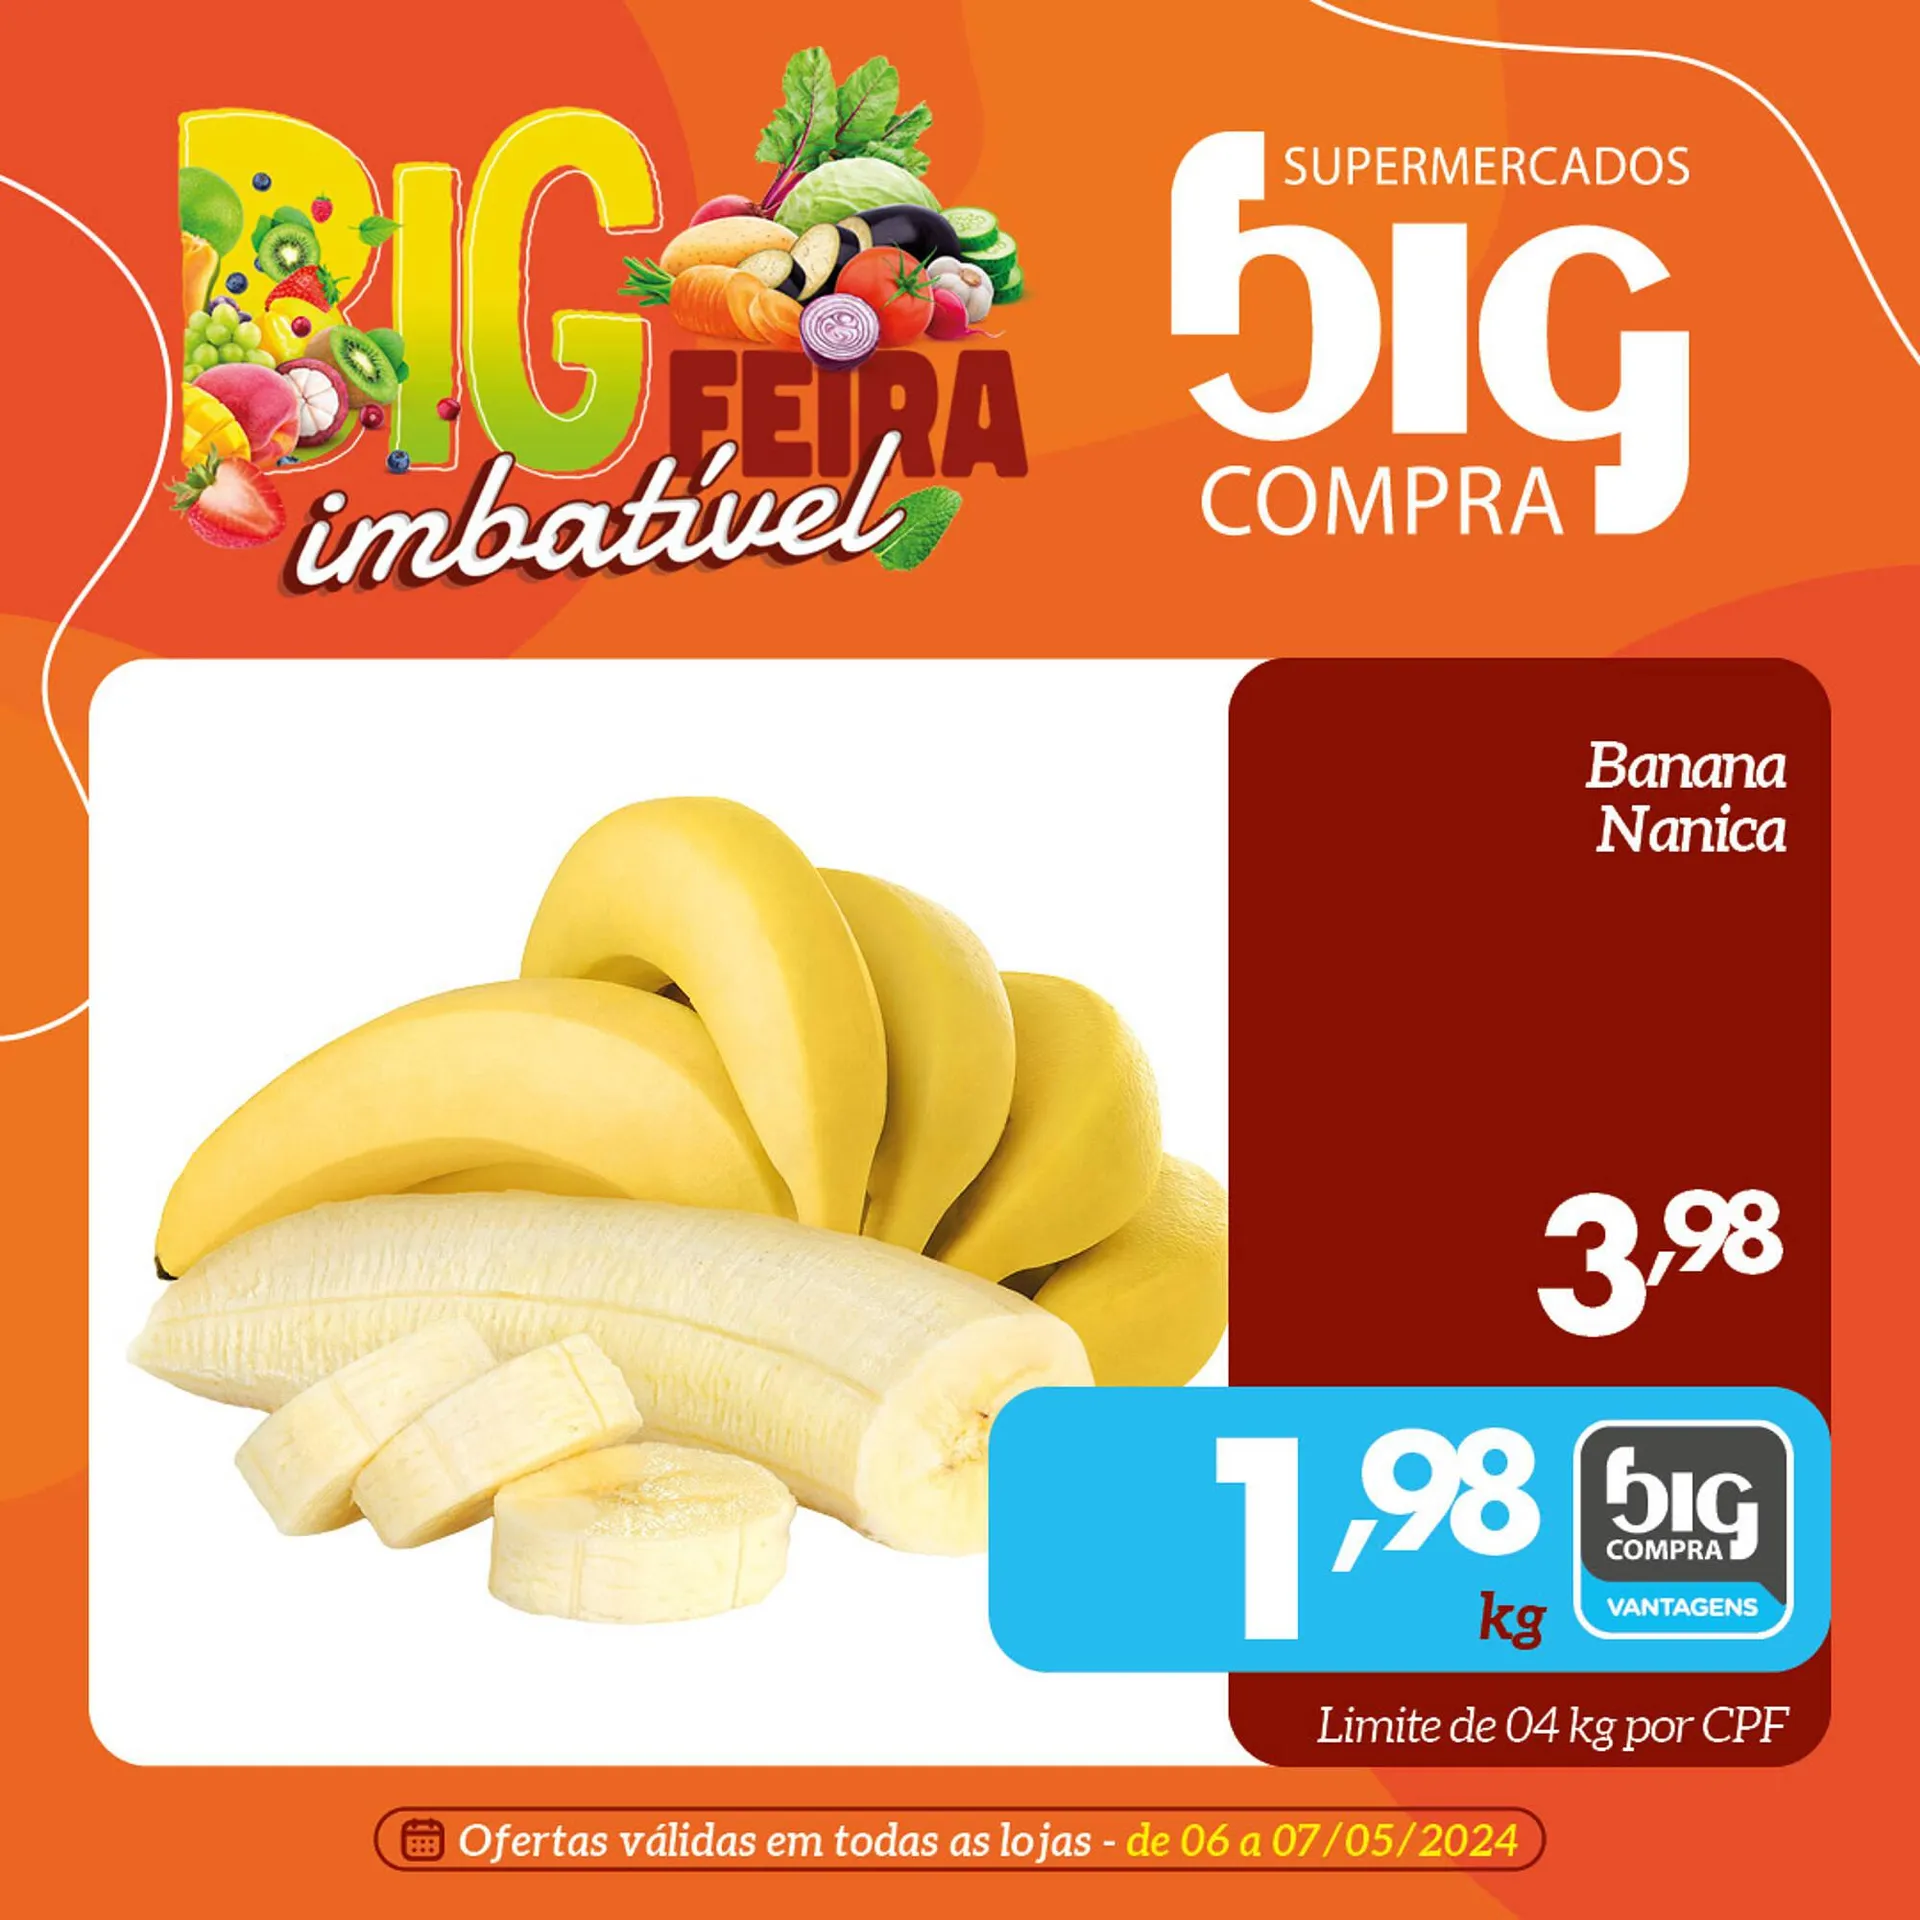 Catálogo Supermercados Big Compra - 1